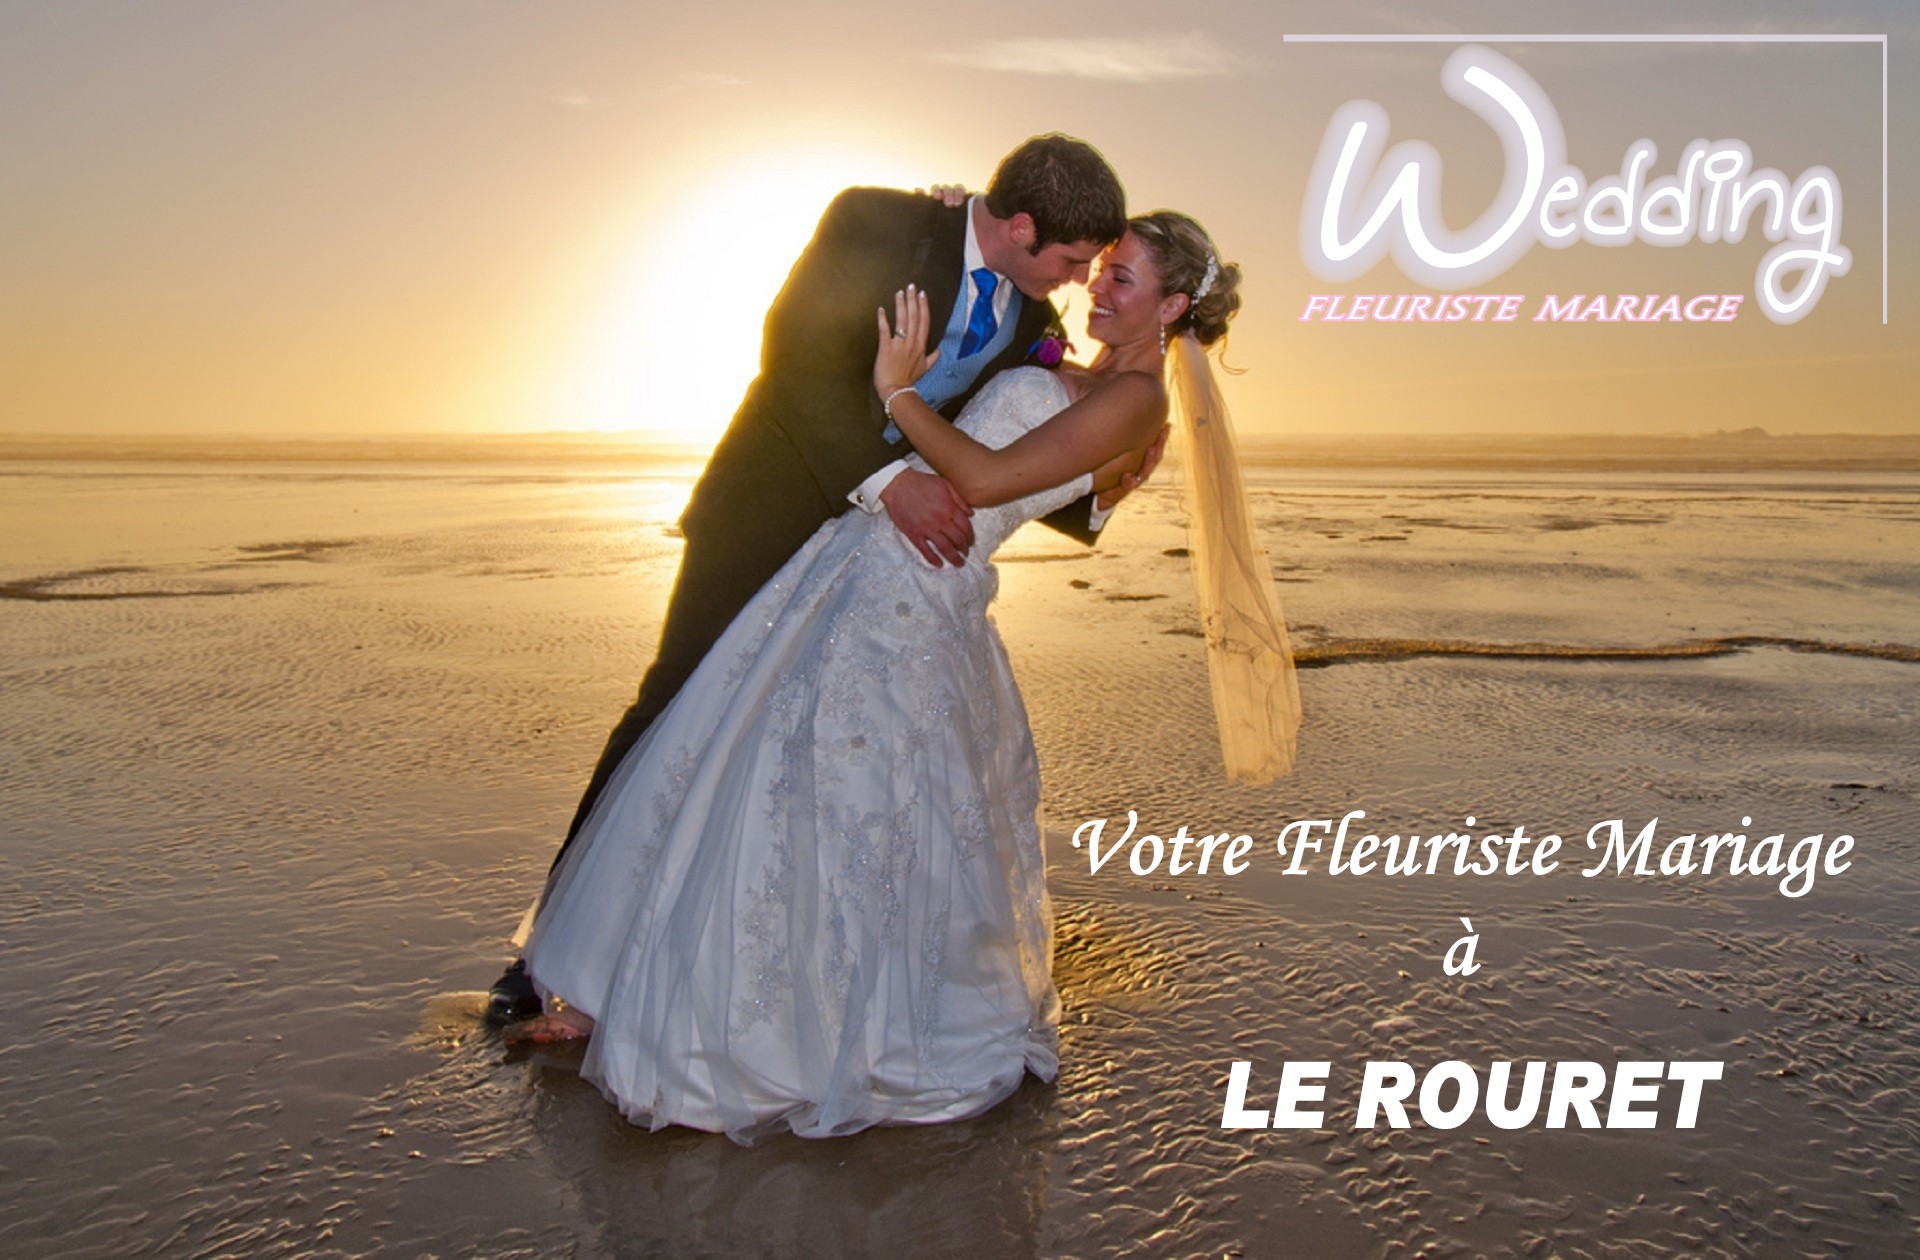 FLEURISTE MARIAGE LE ROURET - WEDDING PLANNER LE ROURET - TRAITEUR LE ROURET